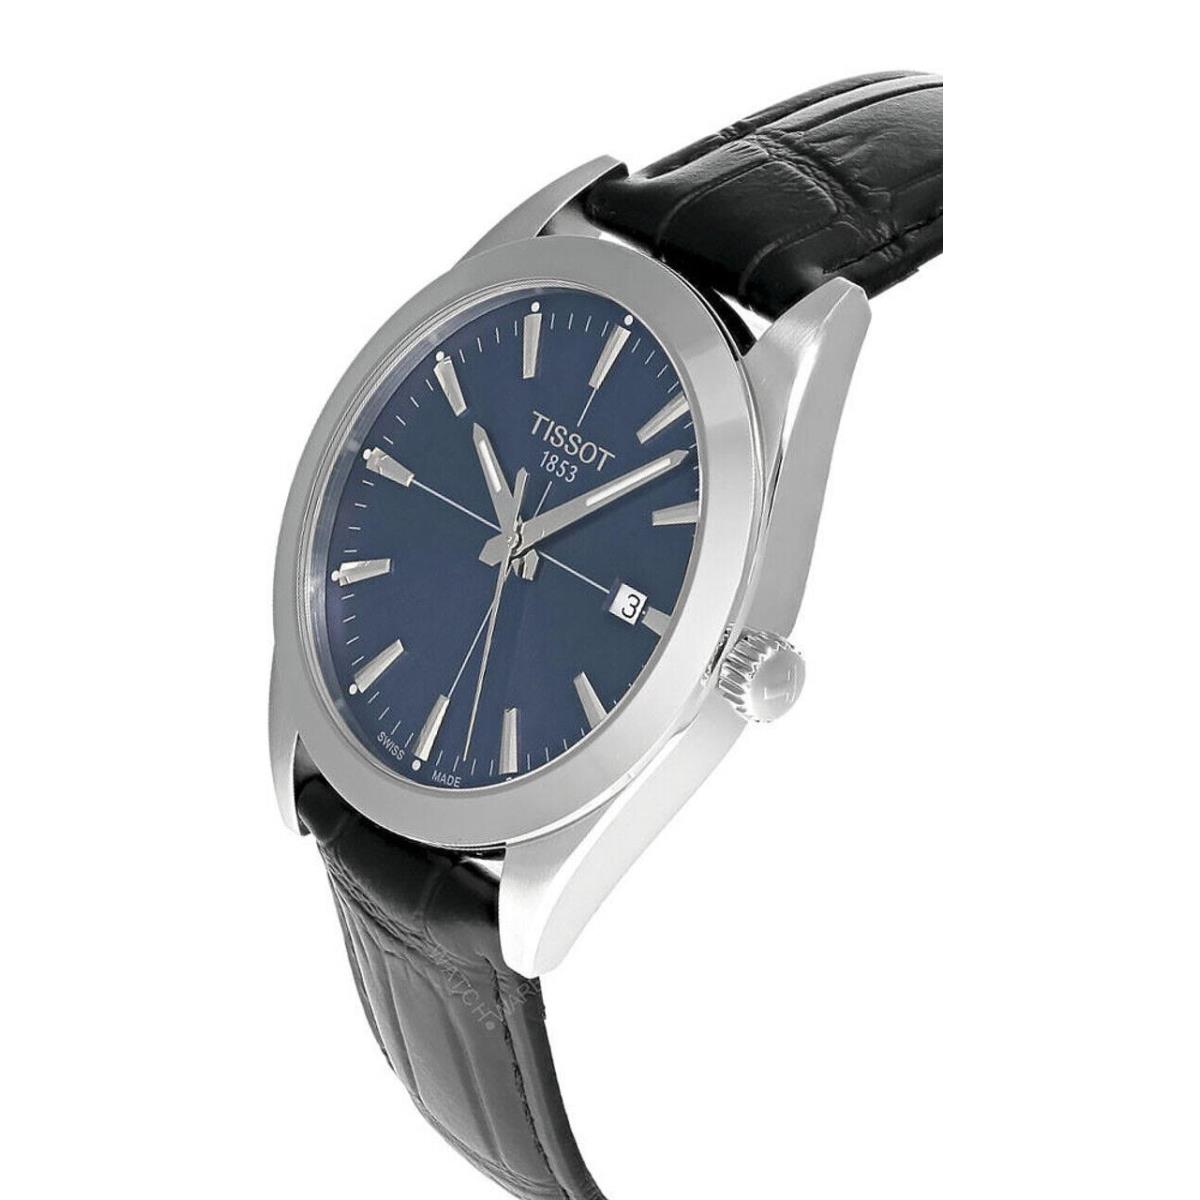 Tissot watch Gentleman - Blue Dial, Black Band, Silver Bezel 0